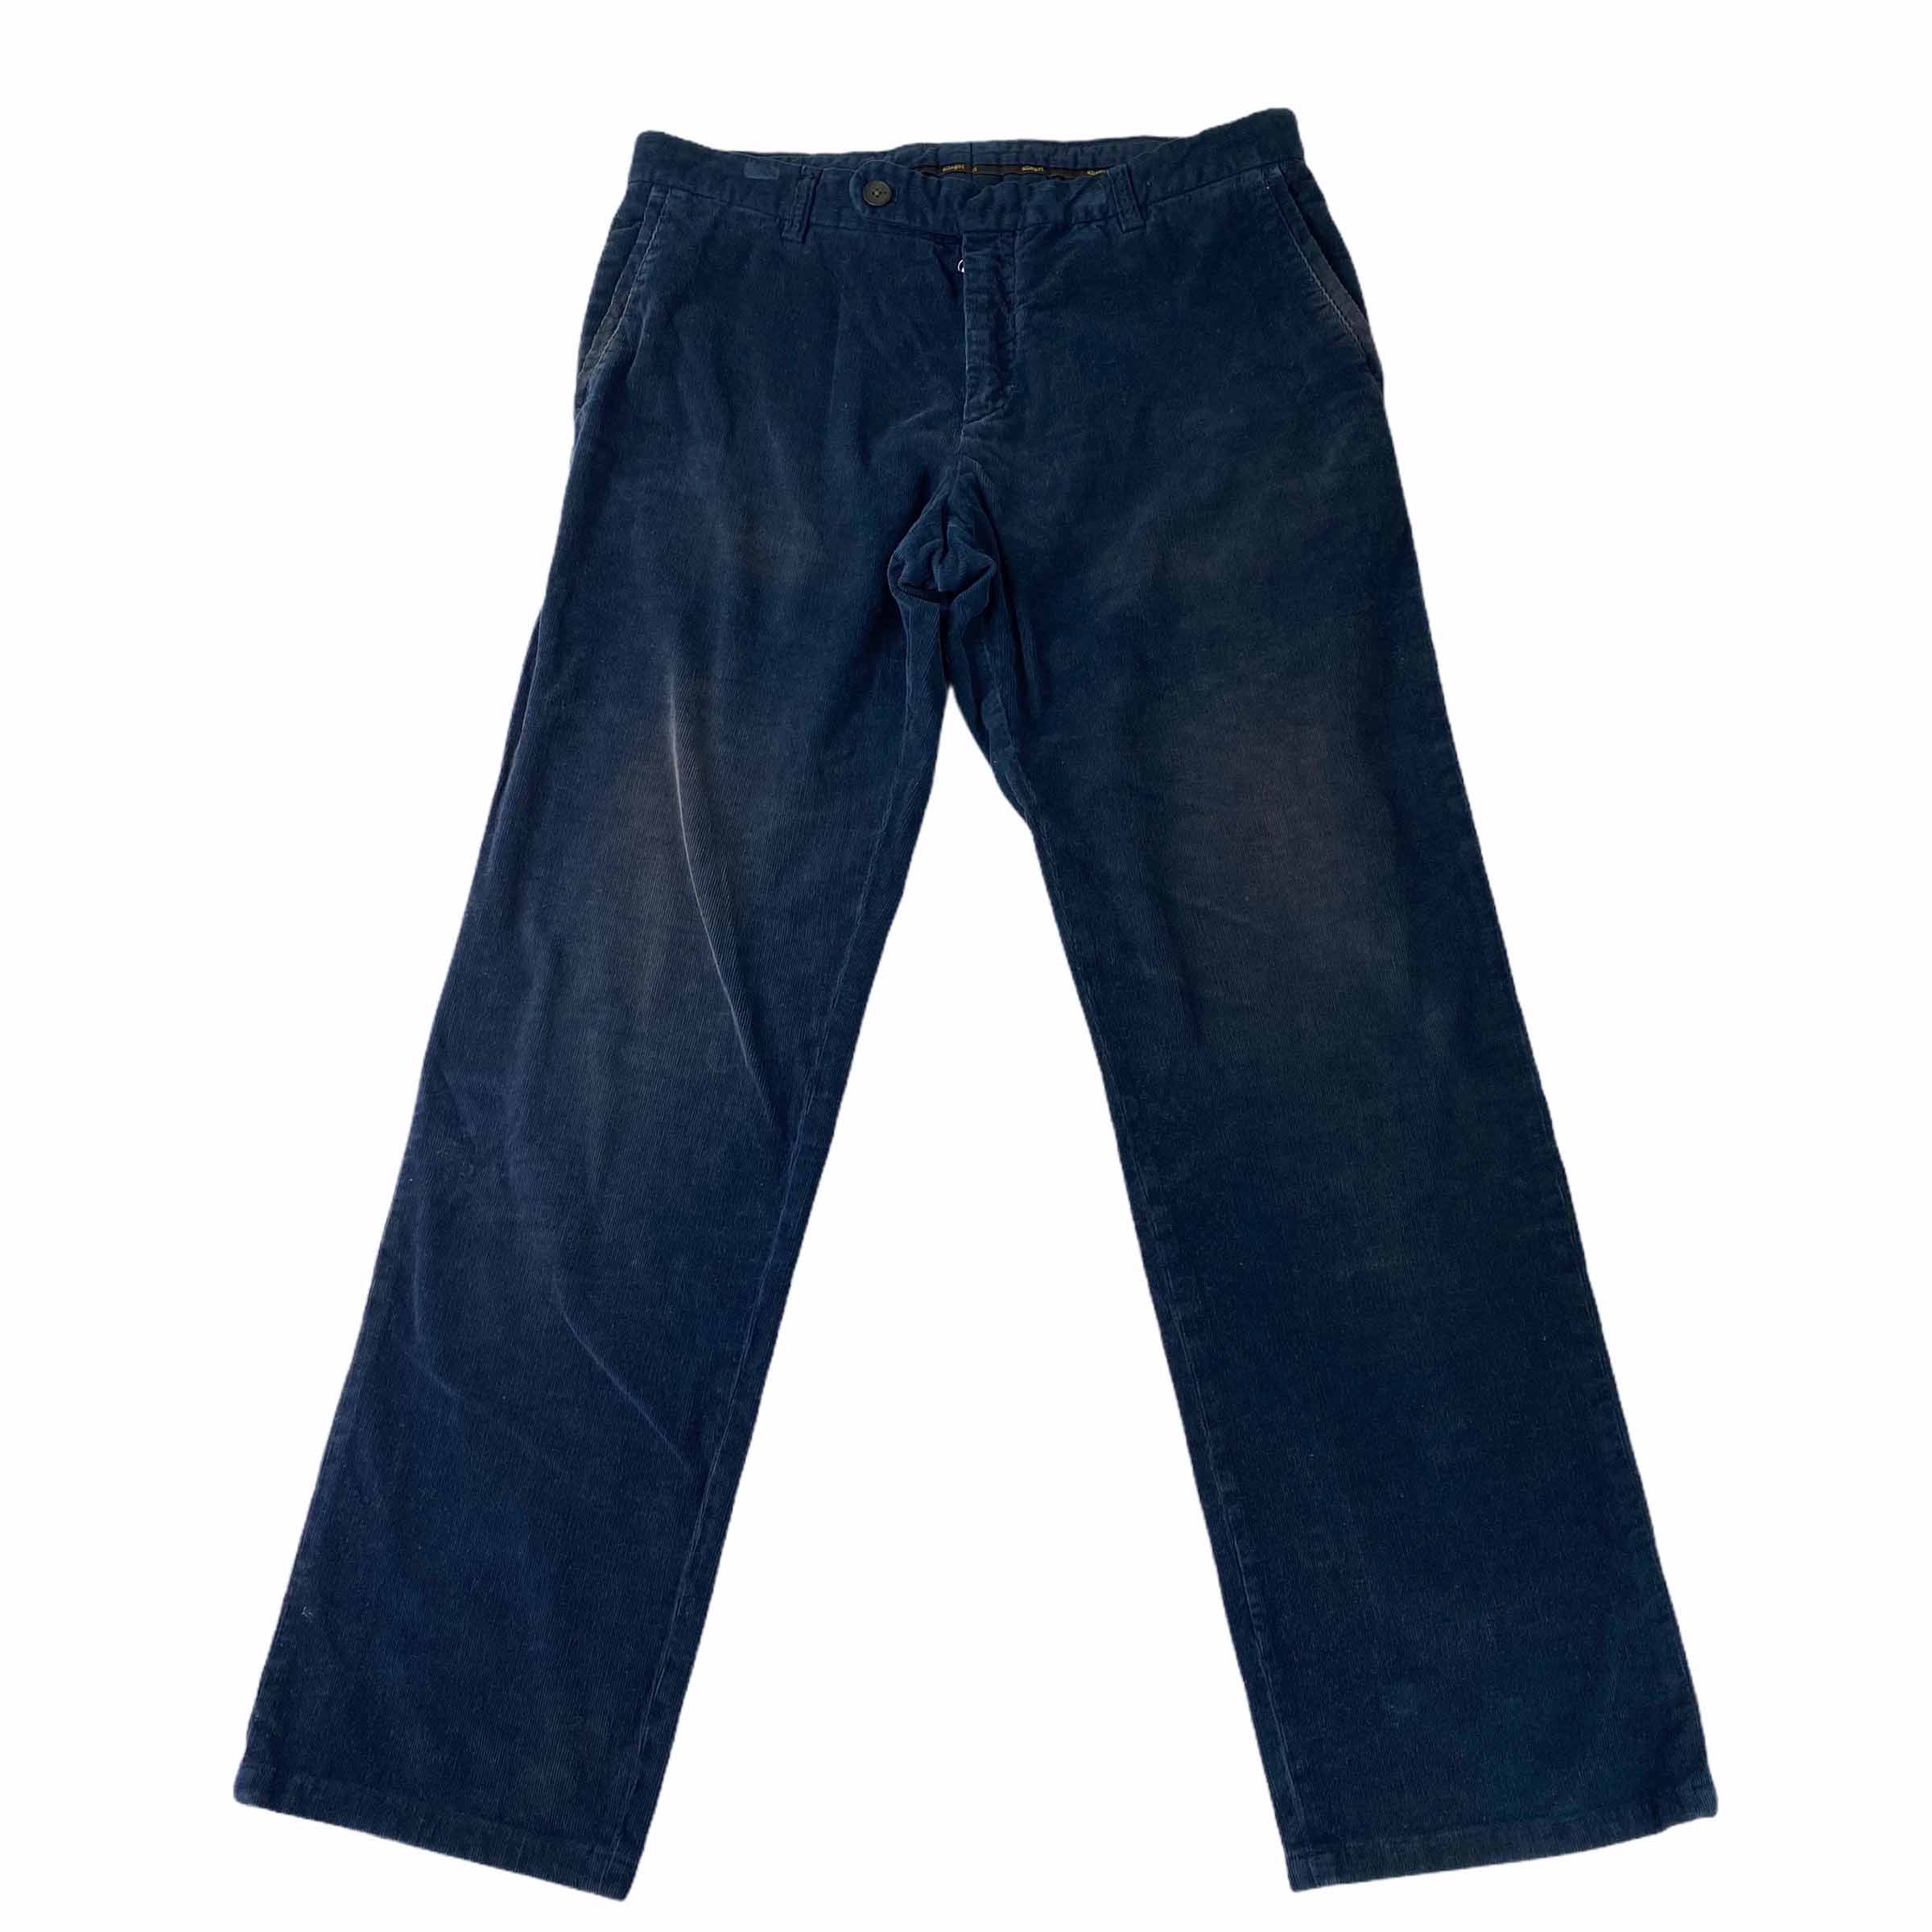 [Allegri] Navy Corduroy Pant - Size 86